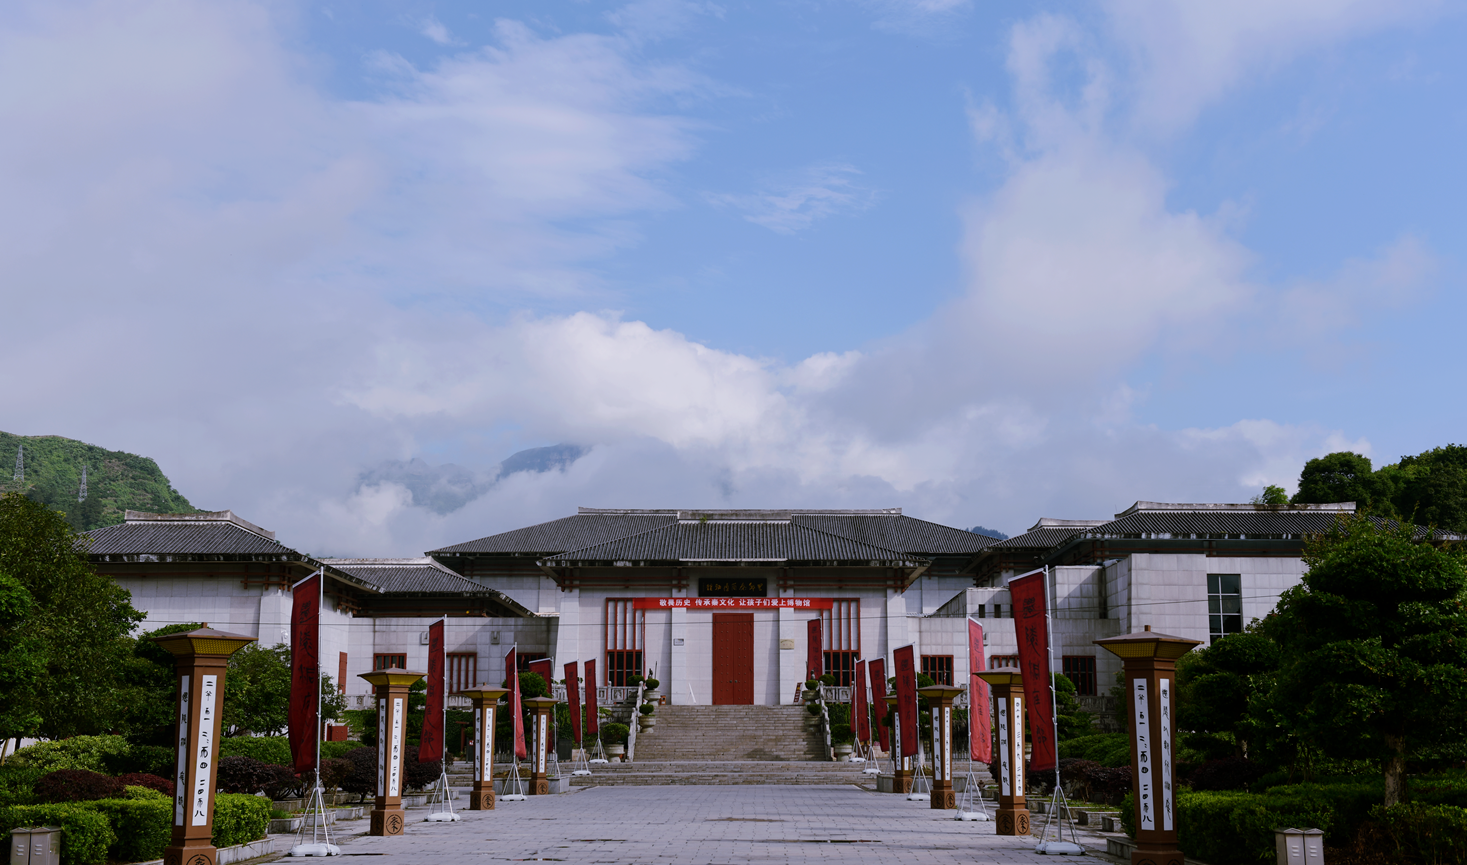 龙山县里耶秦简博物馆在国家二级博物馆运行评估喜获佳绩！